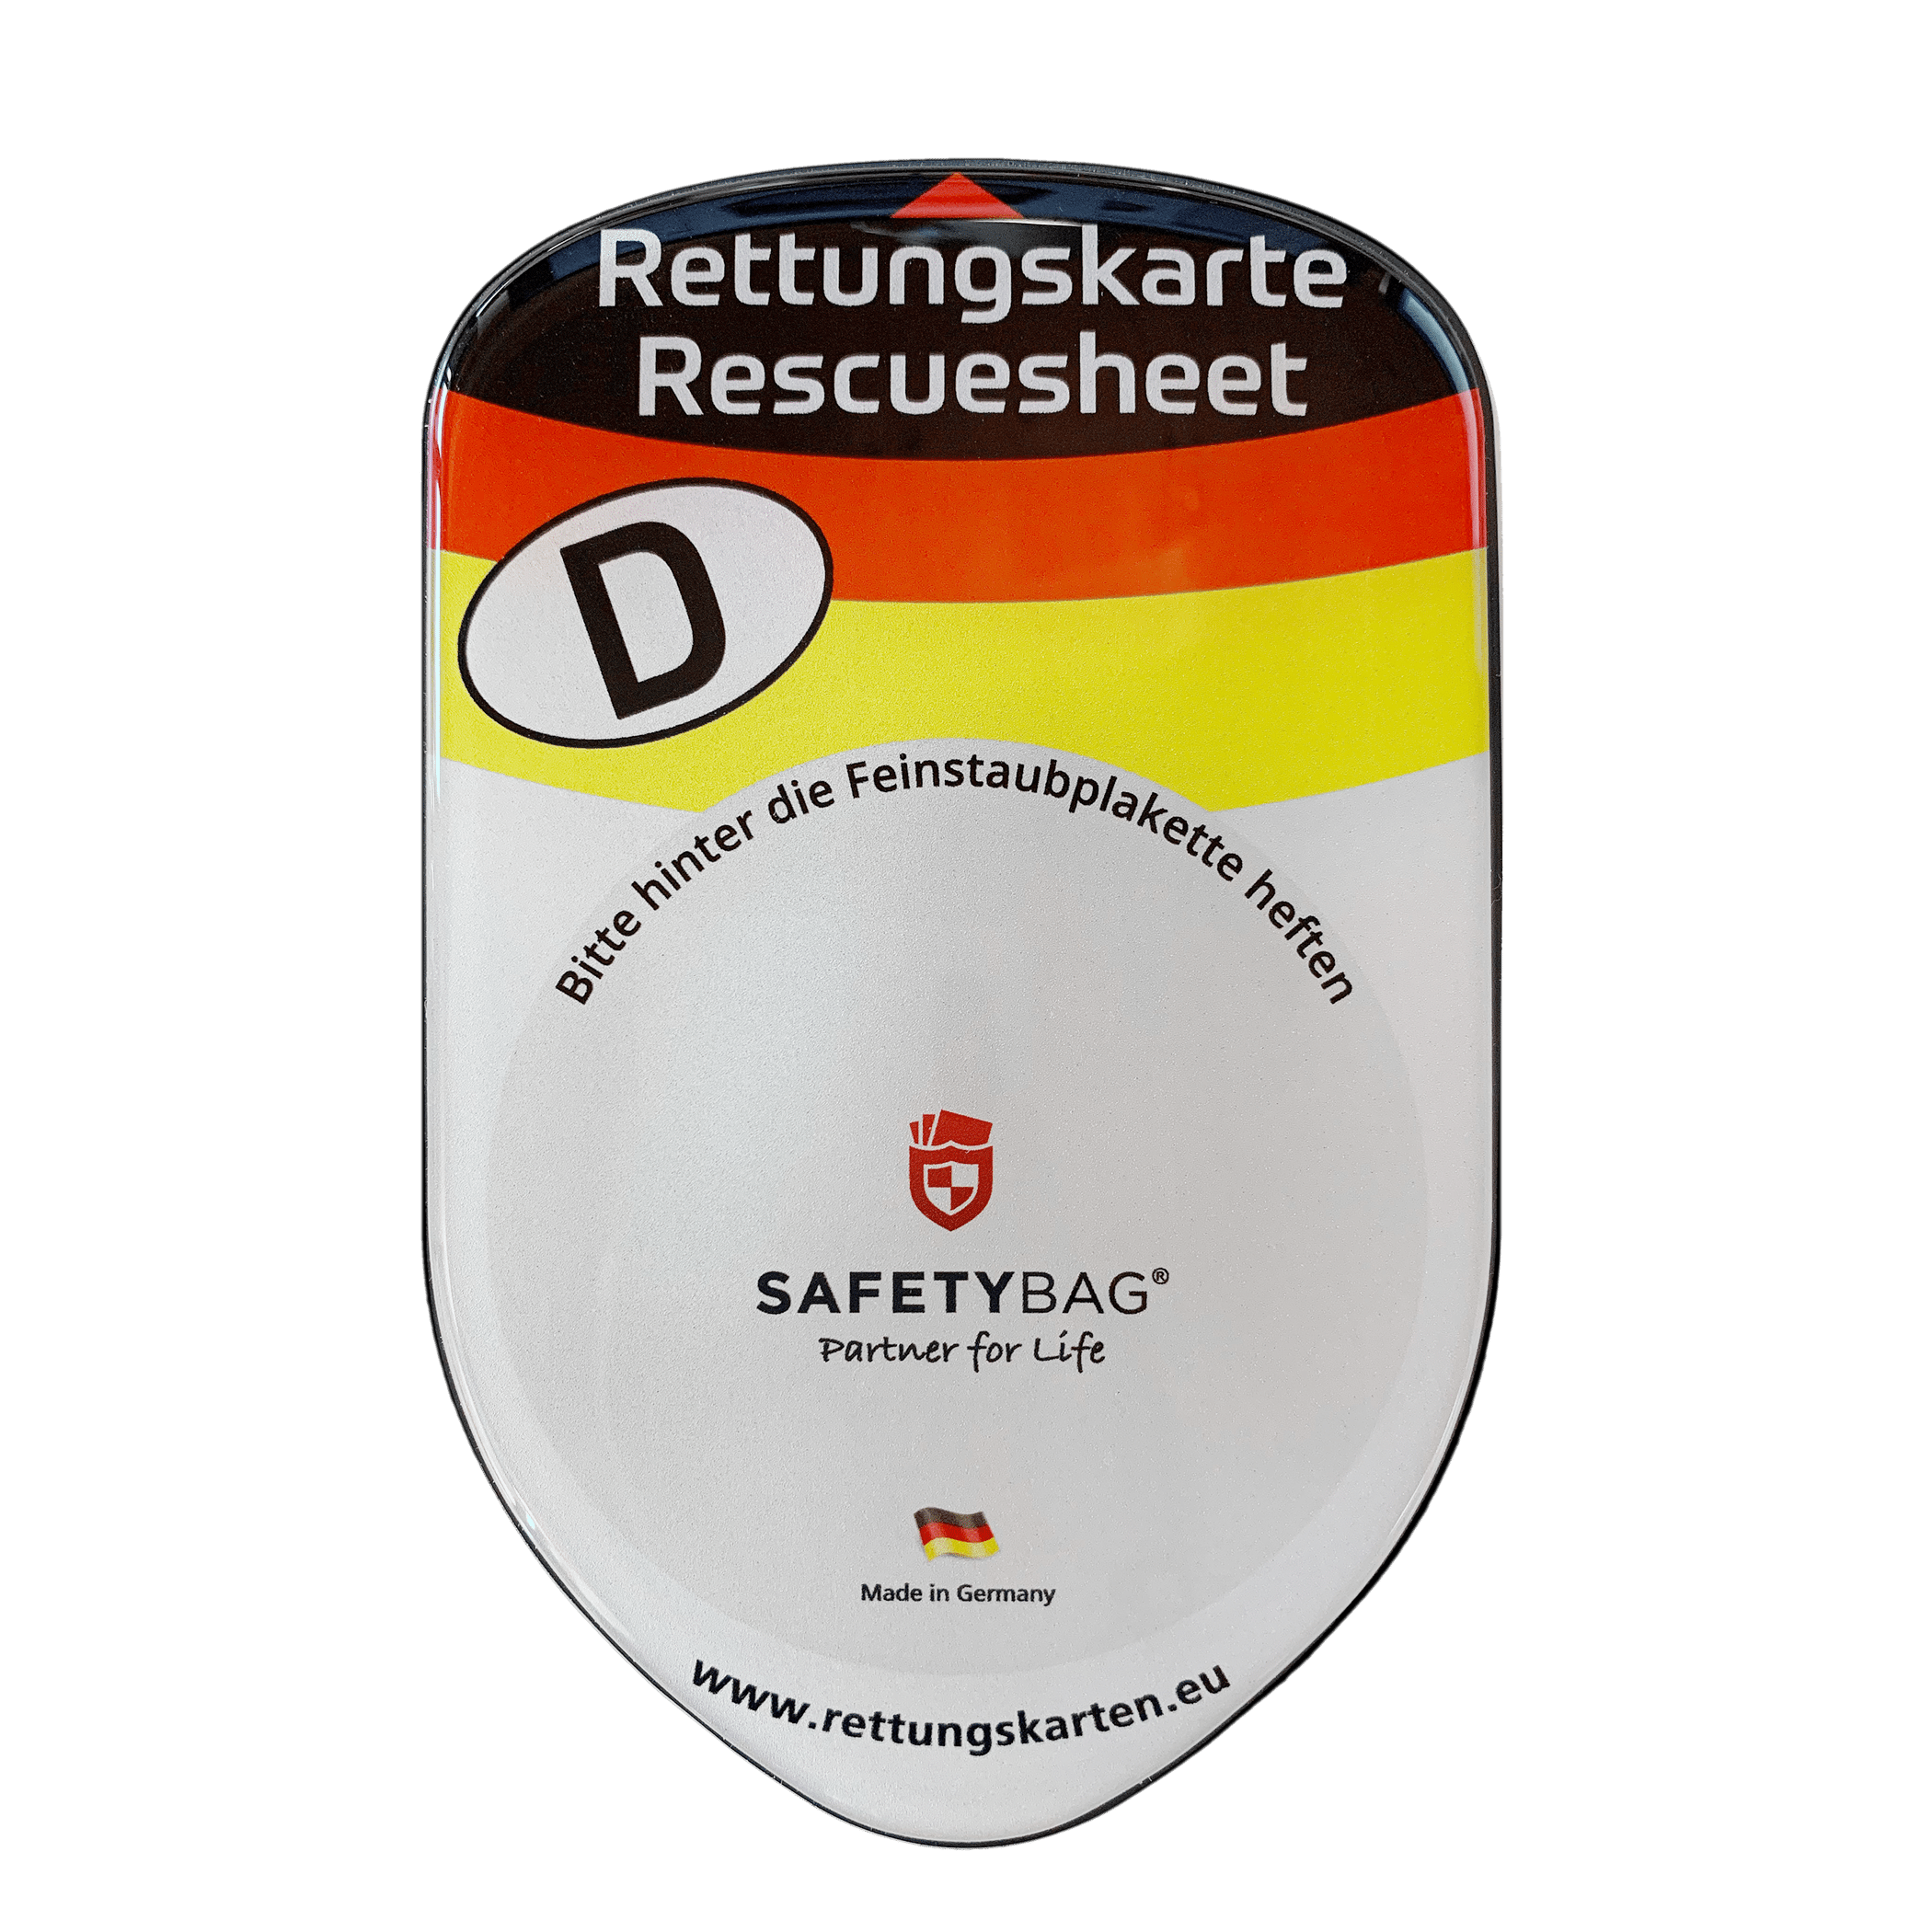 SafetyParker  Parkscheibe mit Gurtschneider - Rettungskartenhalterung Shop  - SAFETYBAG